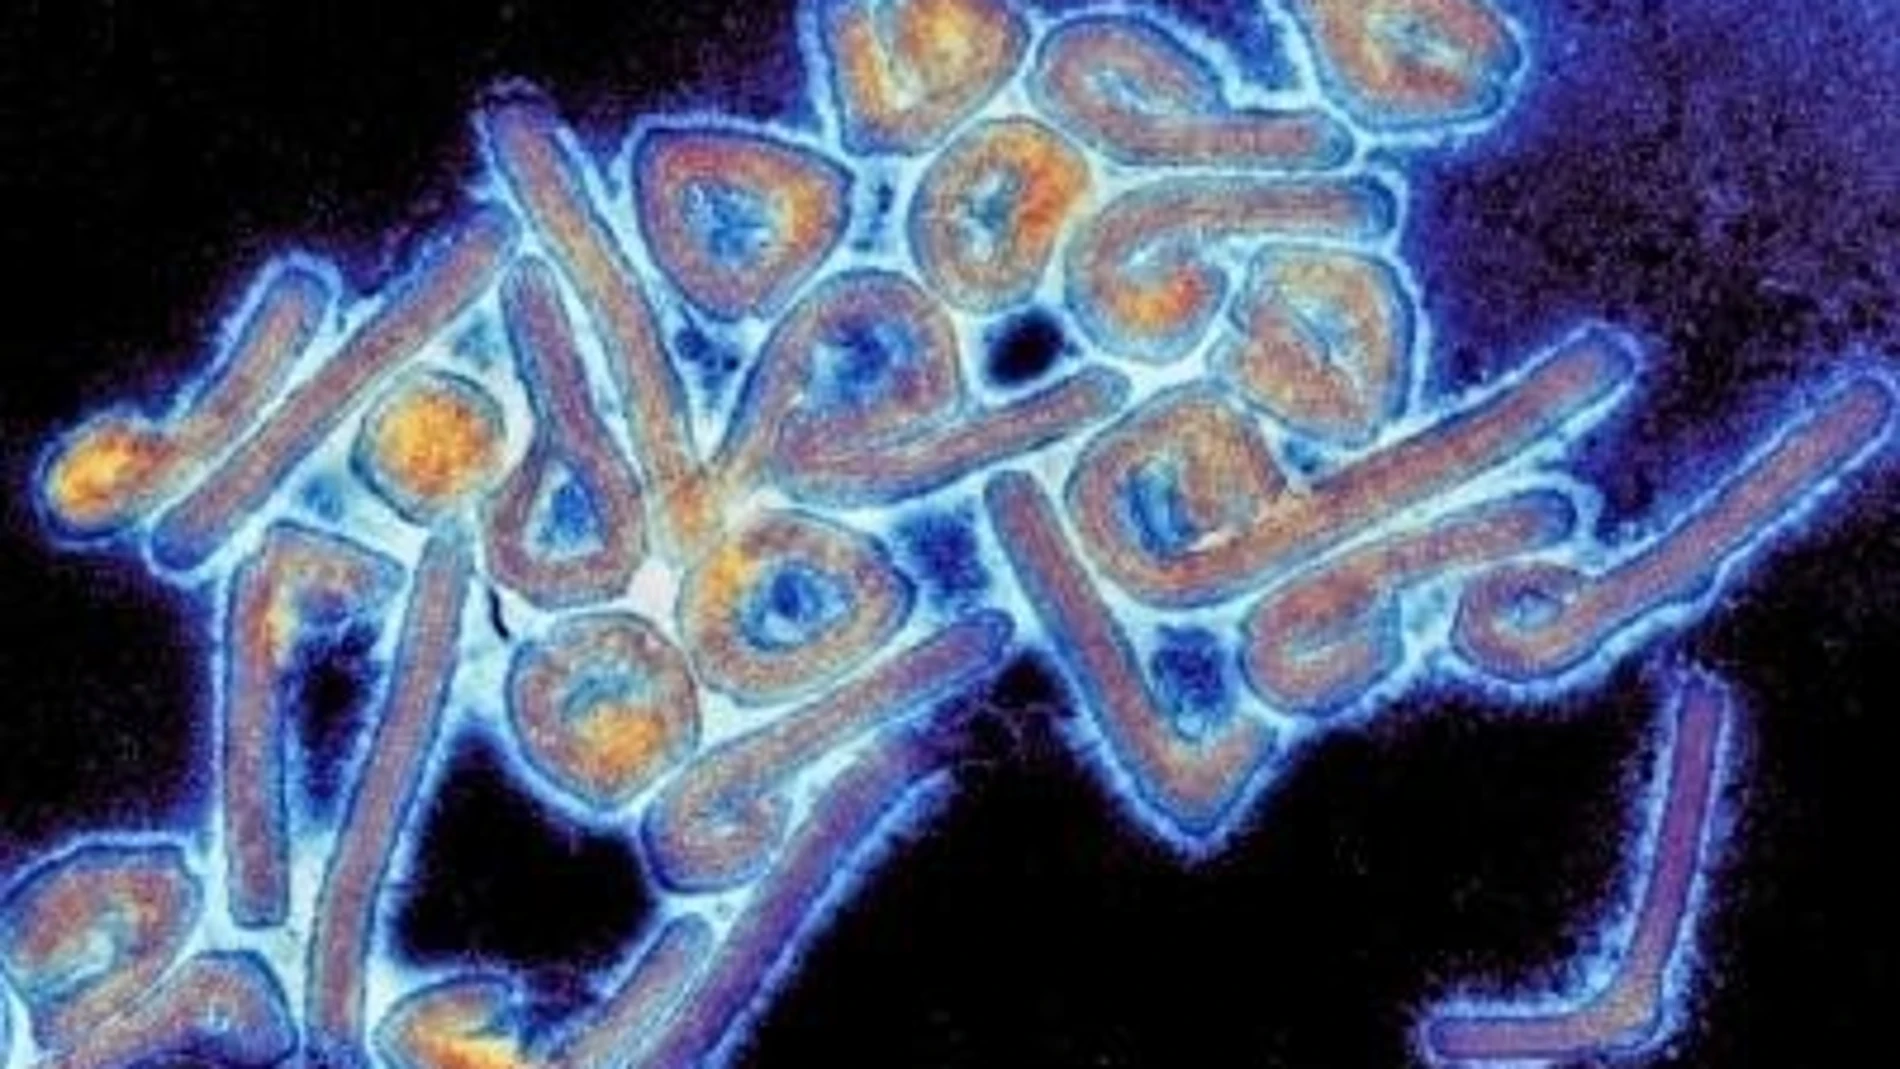 Guinea Ec.- Guinea Ecuatorial declara la alerta sanitaria tras confirmar un brote de virus de Marburgo, similar al ébola